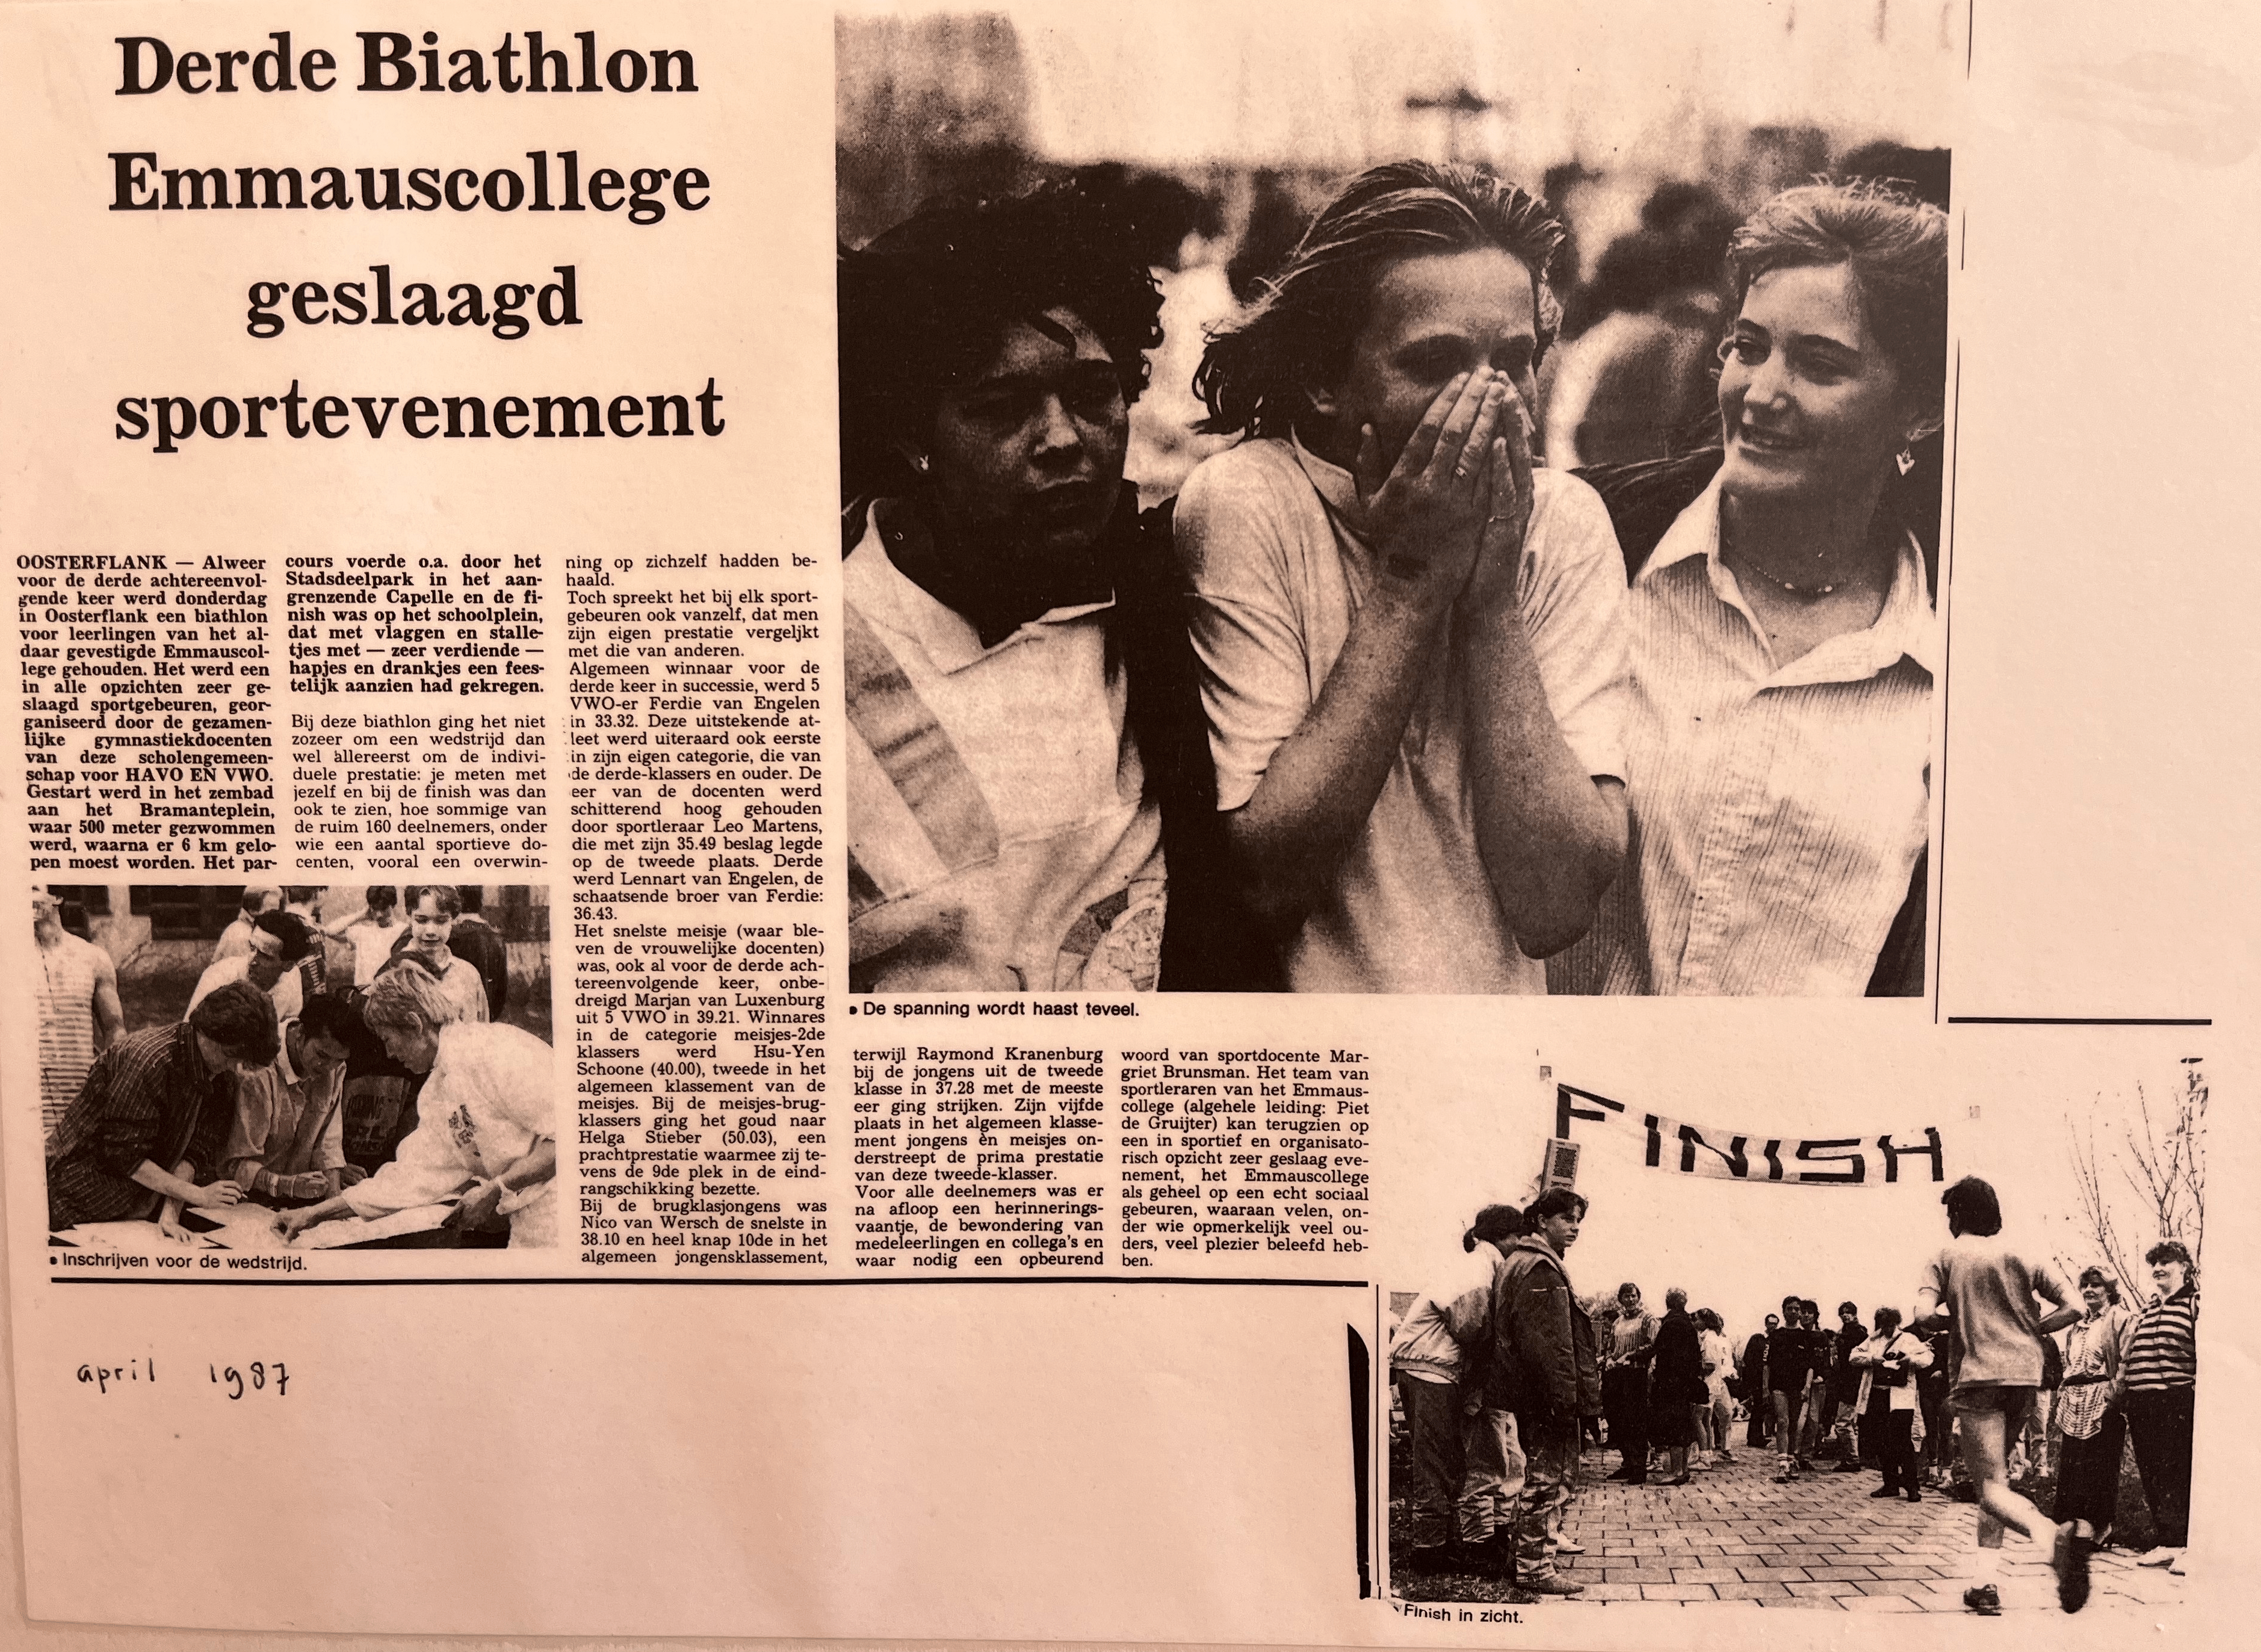 Featured image for “Derde Biathlon Emmauscollege geslaagd sportevenement (april 1987)”